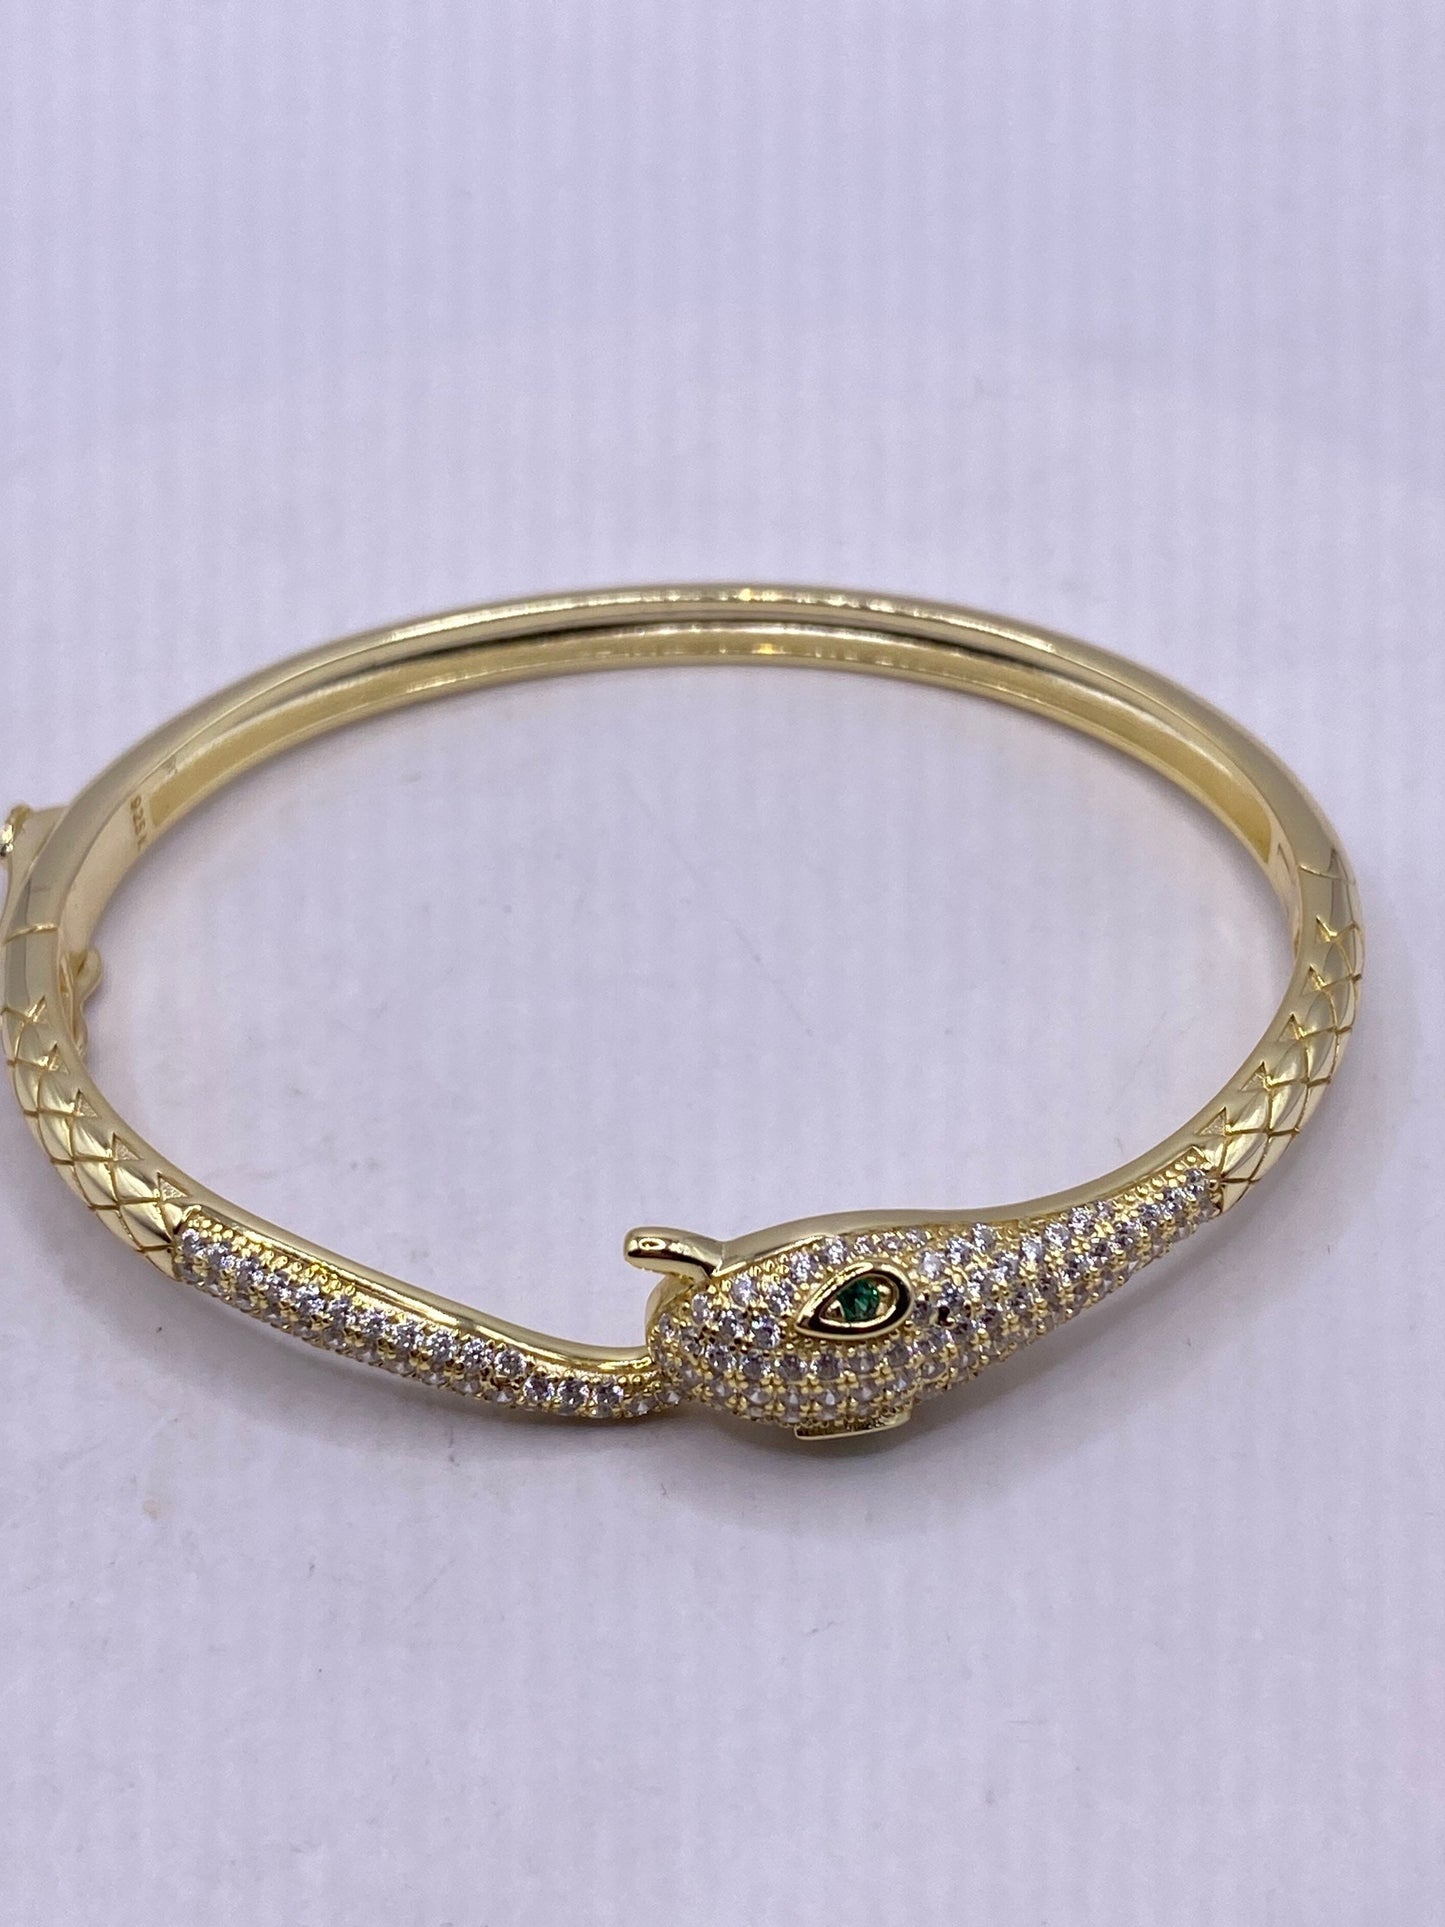 Vintage Snake Bangle Bracelet Gold Finished 925 Sterling Silver Crystal Pave